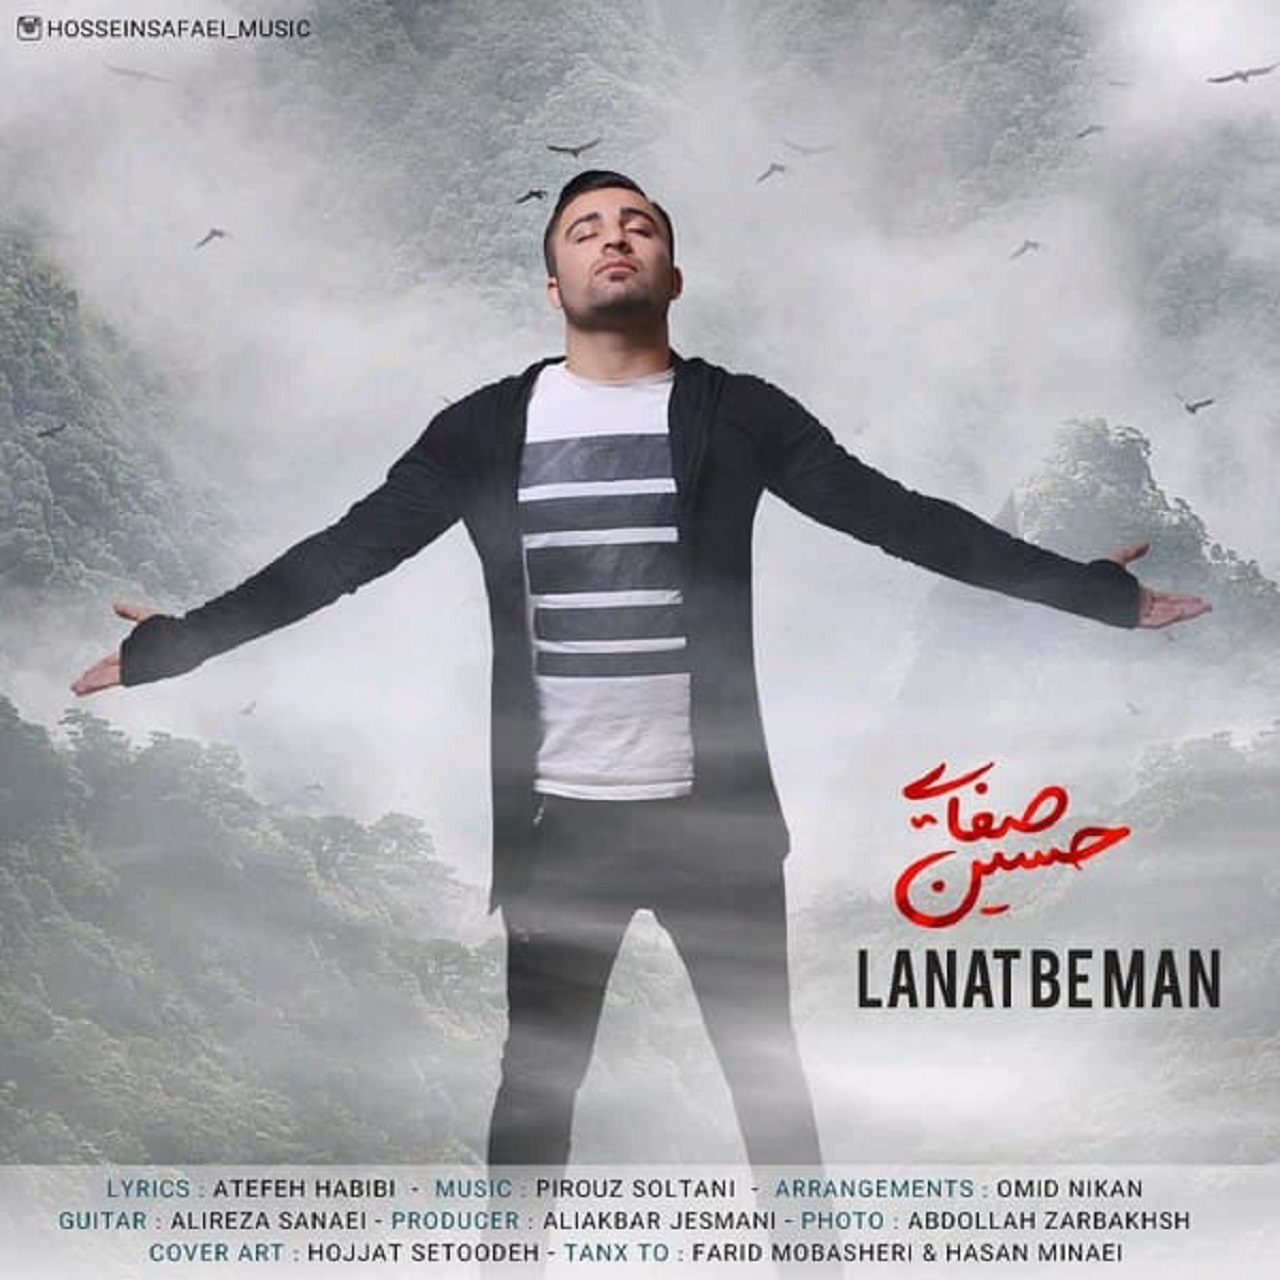  دانلود آهنگ جدید حسین صفایی - لعنت به من | Download New Music By Hossein Safaei - Lanat Be Man